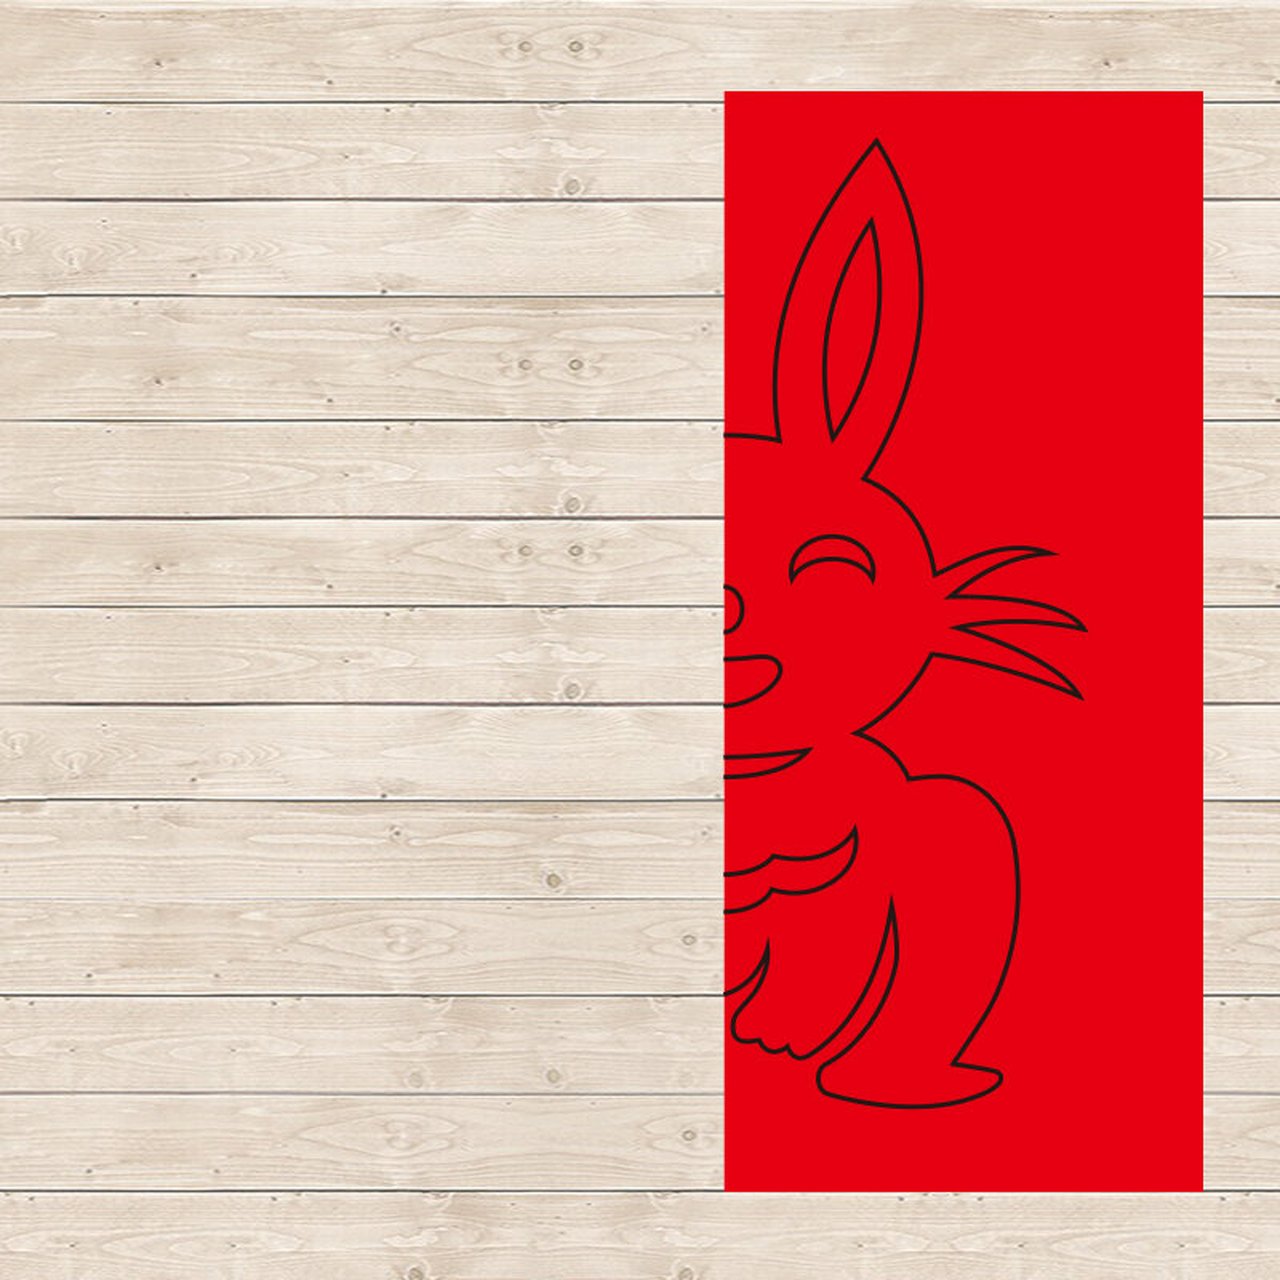 兔子剪纸简单教程图片